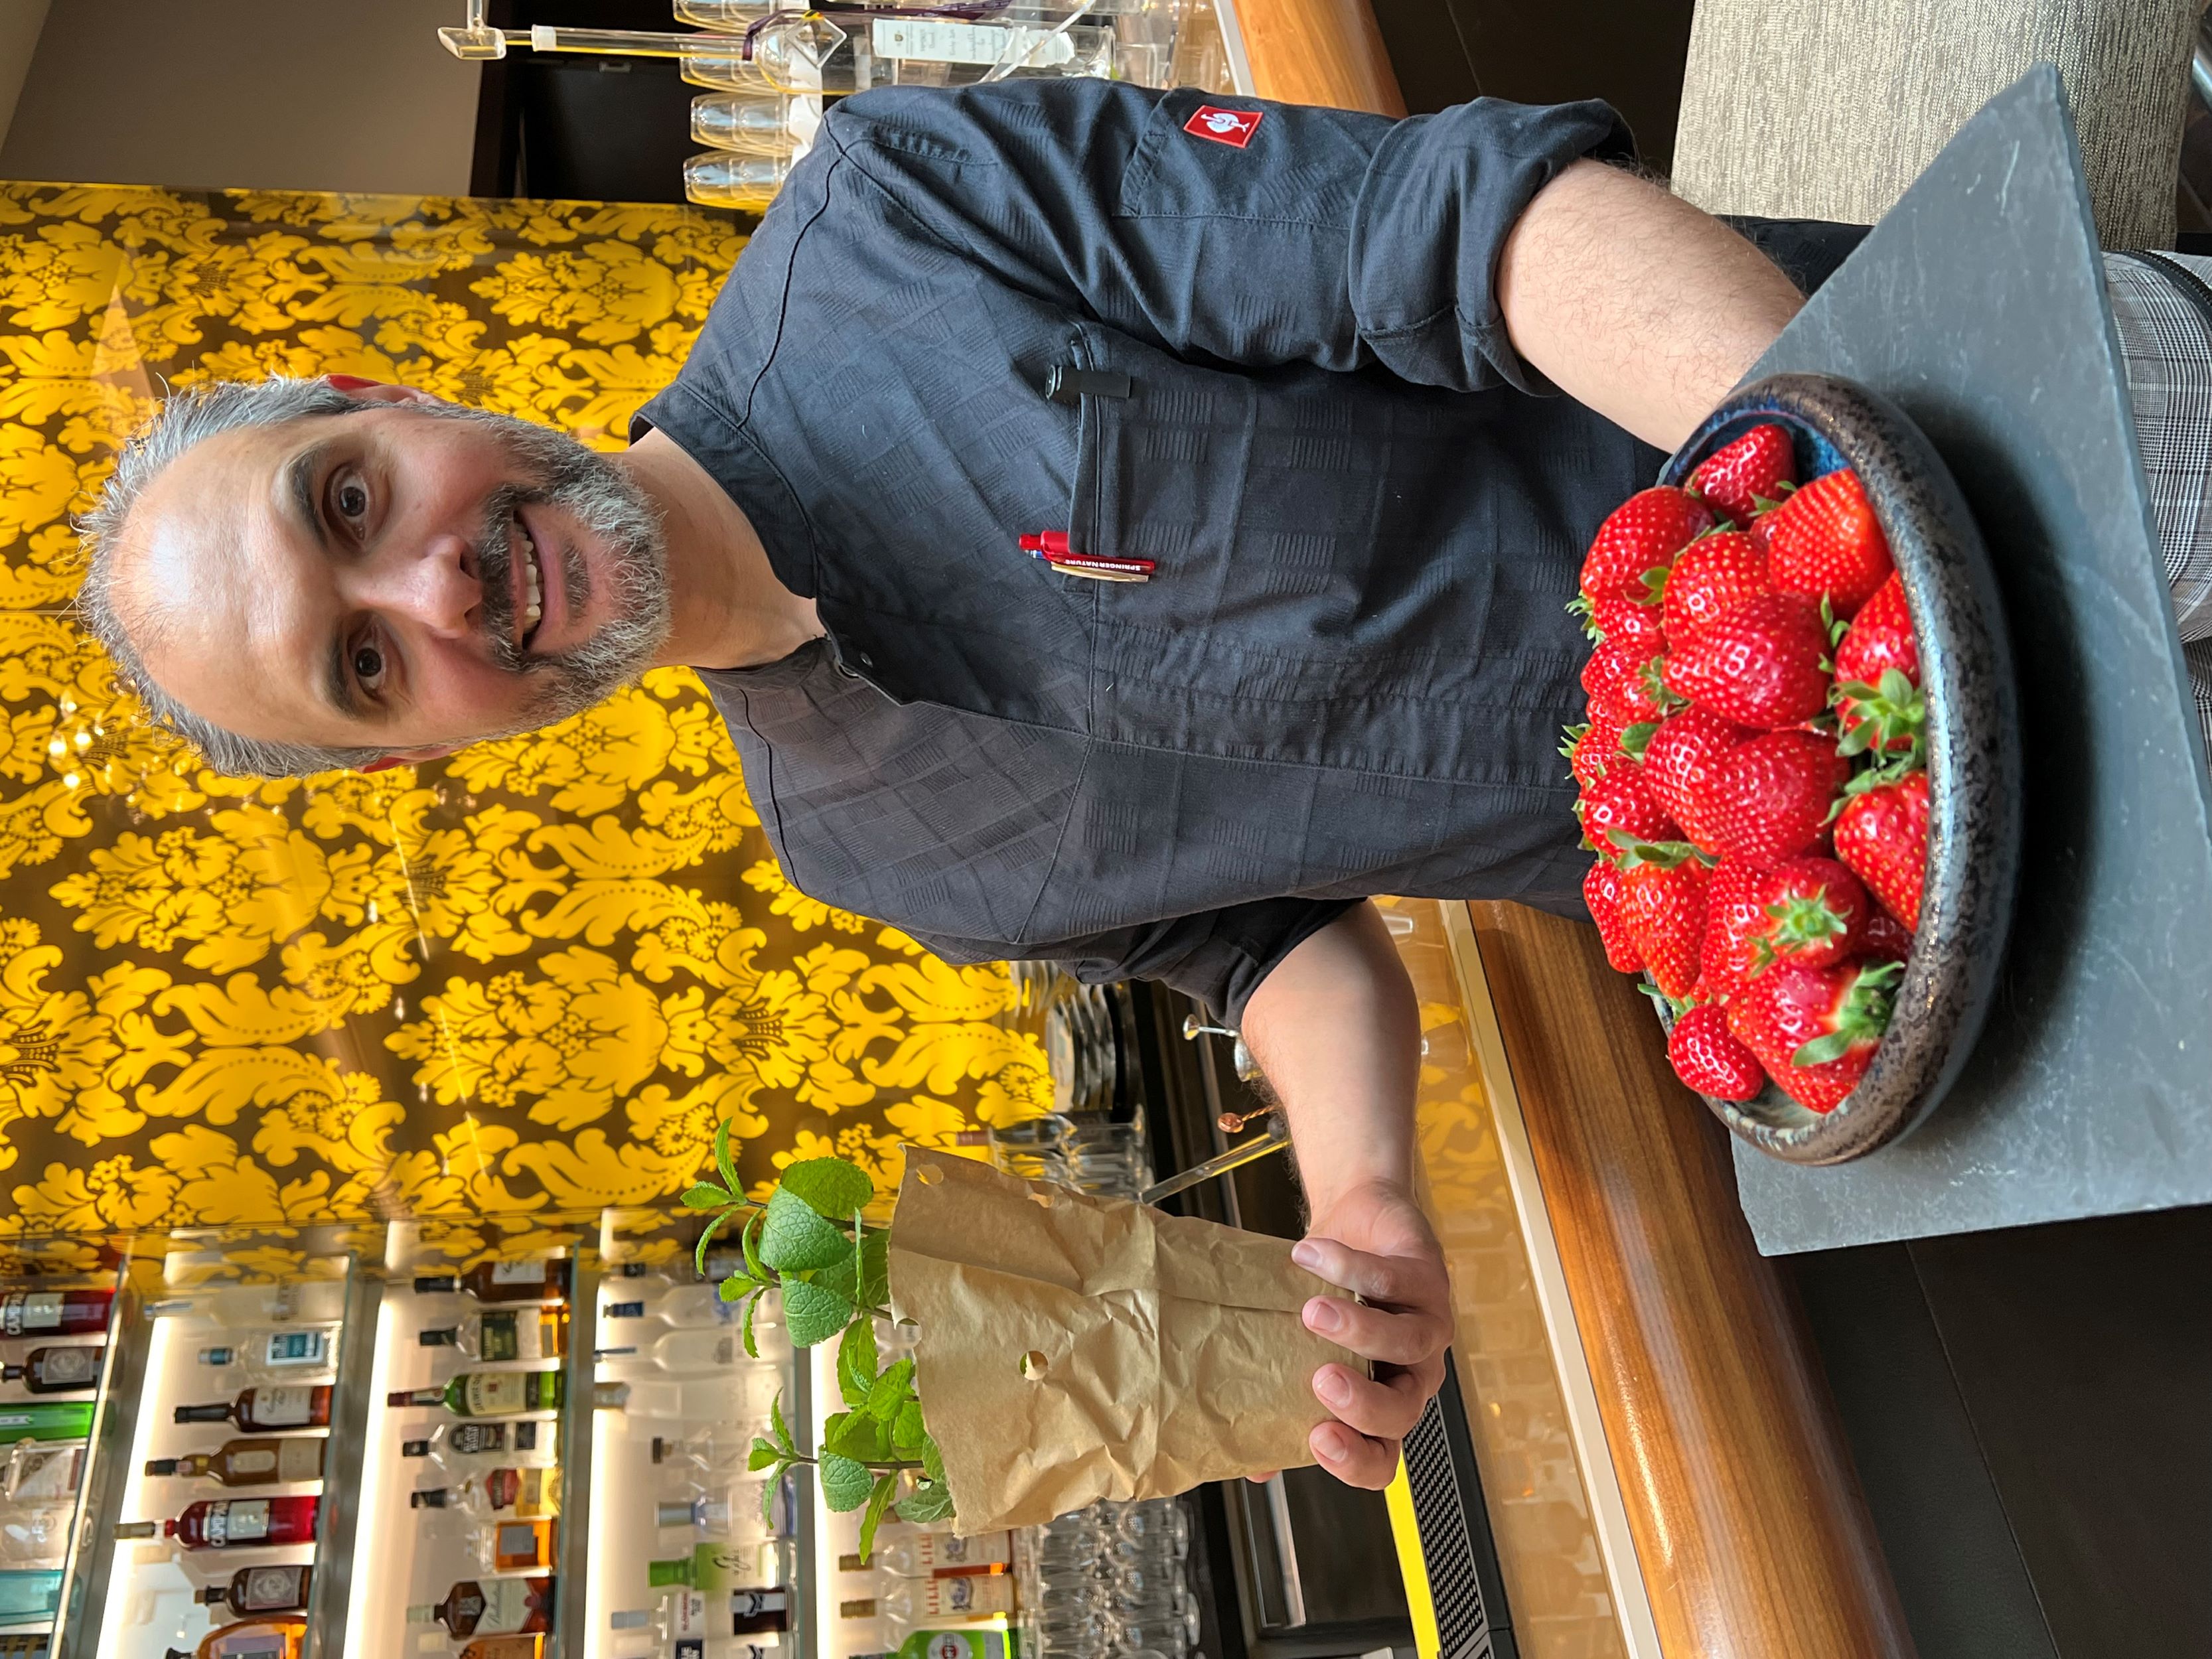 Küchenchef Hr. Balogh mit seinen frischen, regionalen Erdbeeren